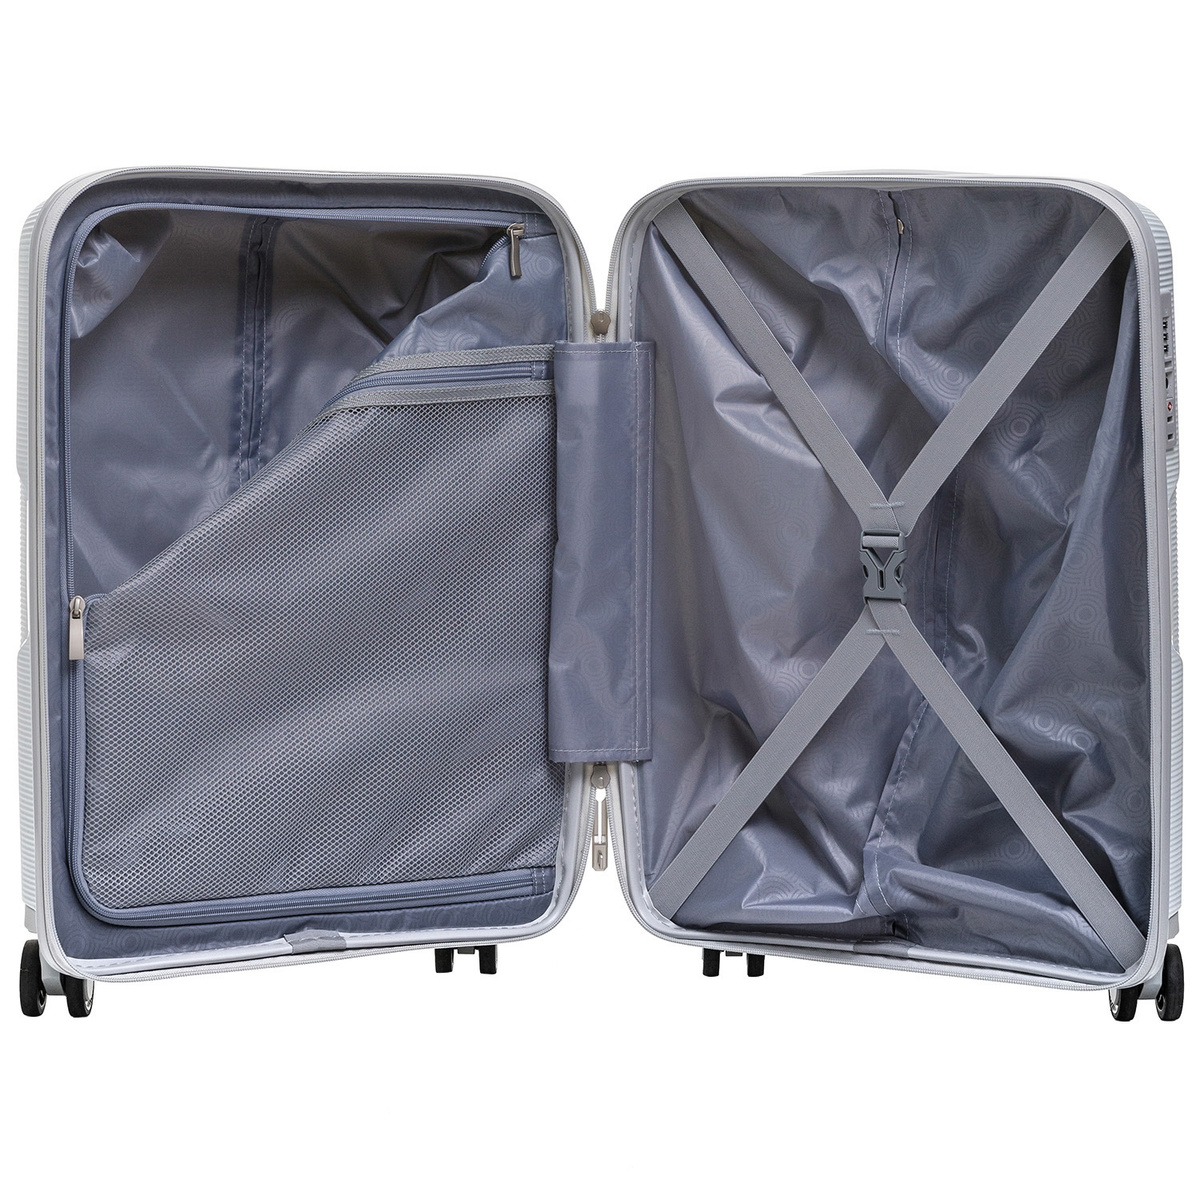 Внутри чемодана одно отделение на замке с дополнительным карманом и просторное отделение с багажными ремнями для еще более удобной организации.